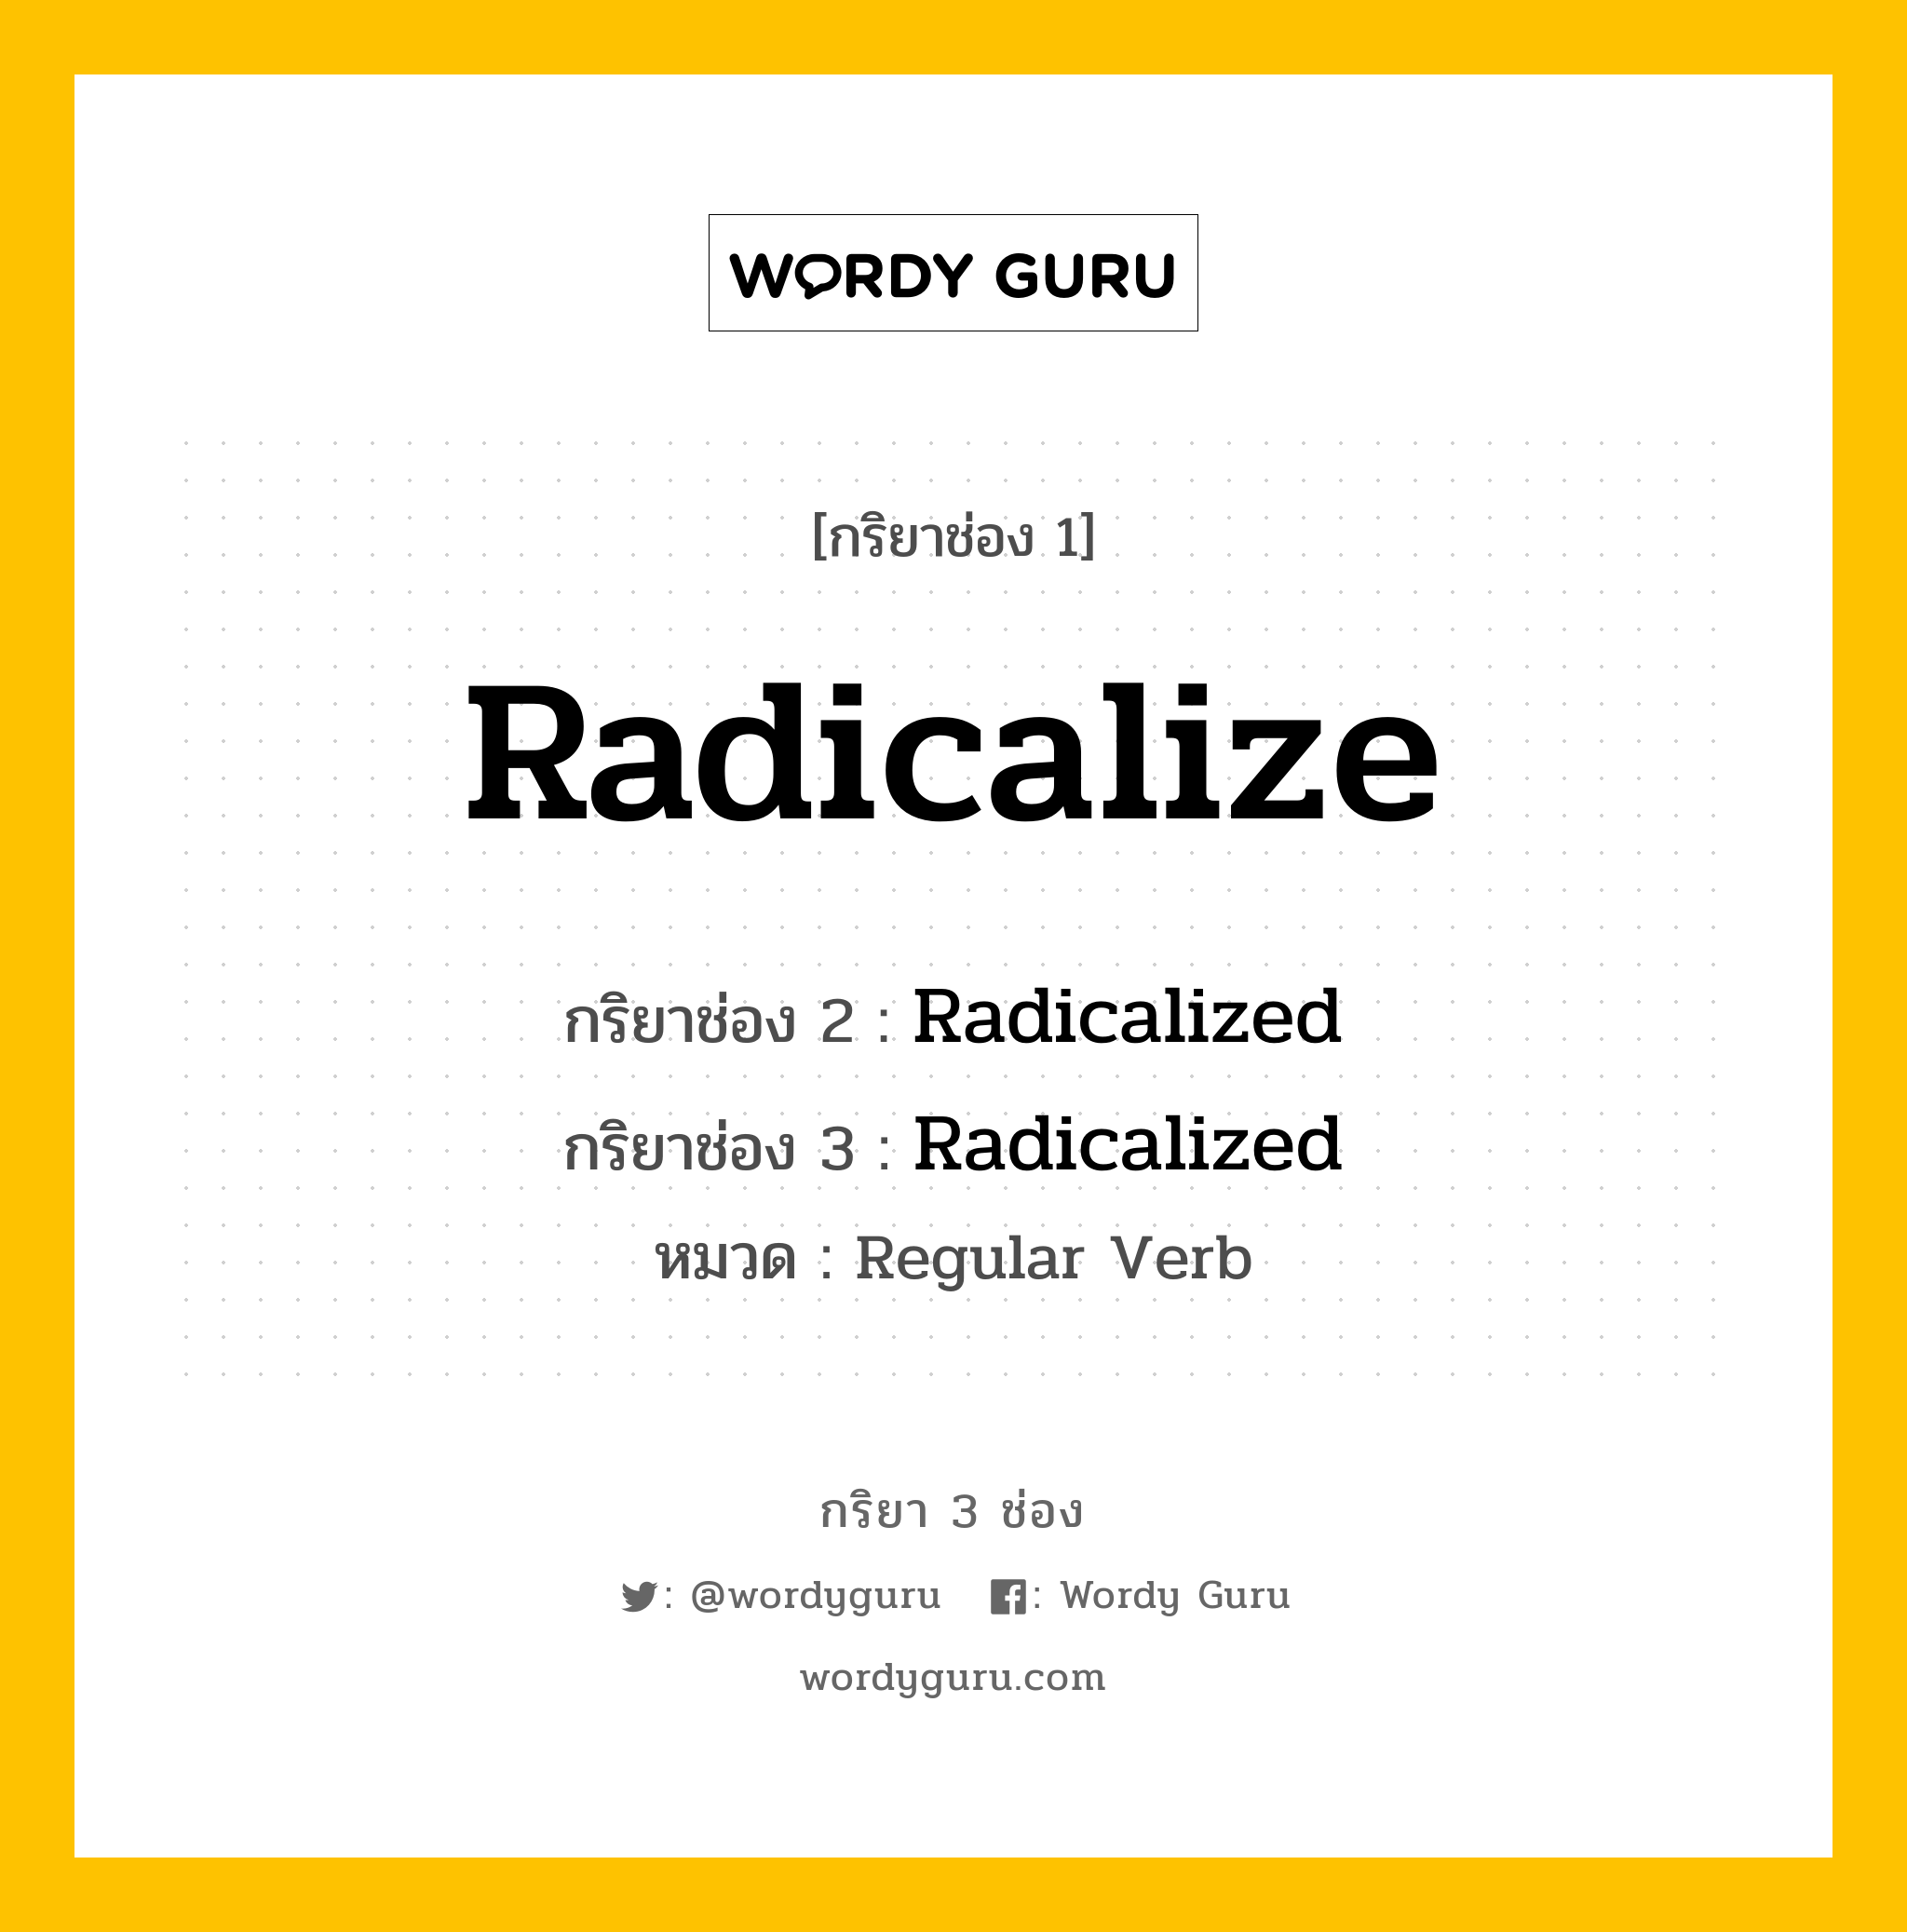 กริยา 3 ช่อง: Radicalize ช่อง 2 Radicalize ช่อง 3 คืออะไร, กริยาช่อง 1 Radicalize กริยาช่อง 2 Radicalized กริยาช่อง 3 Radicalized หมวด Regular Verb หมวด Regular Verb